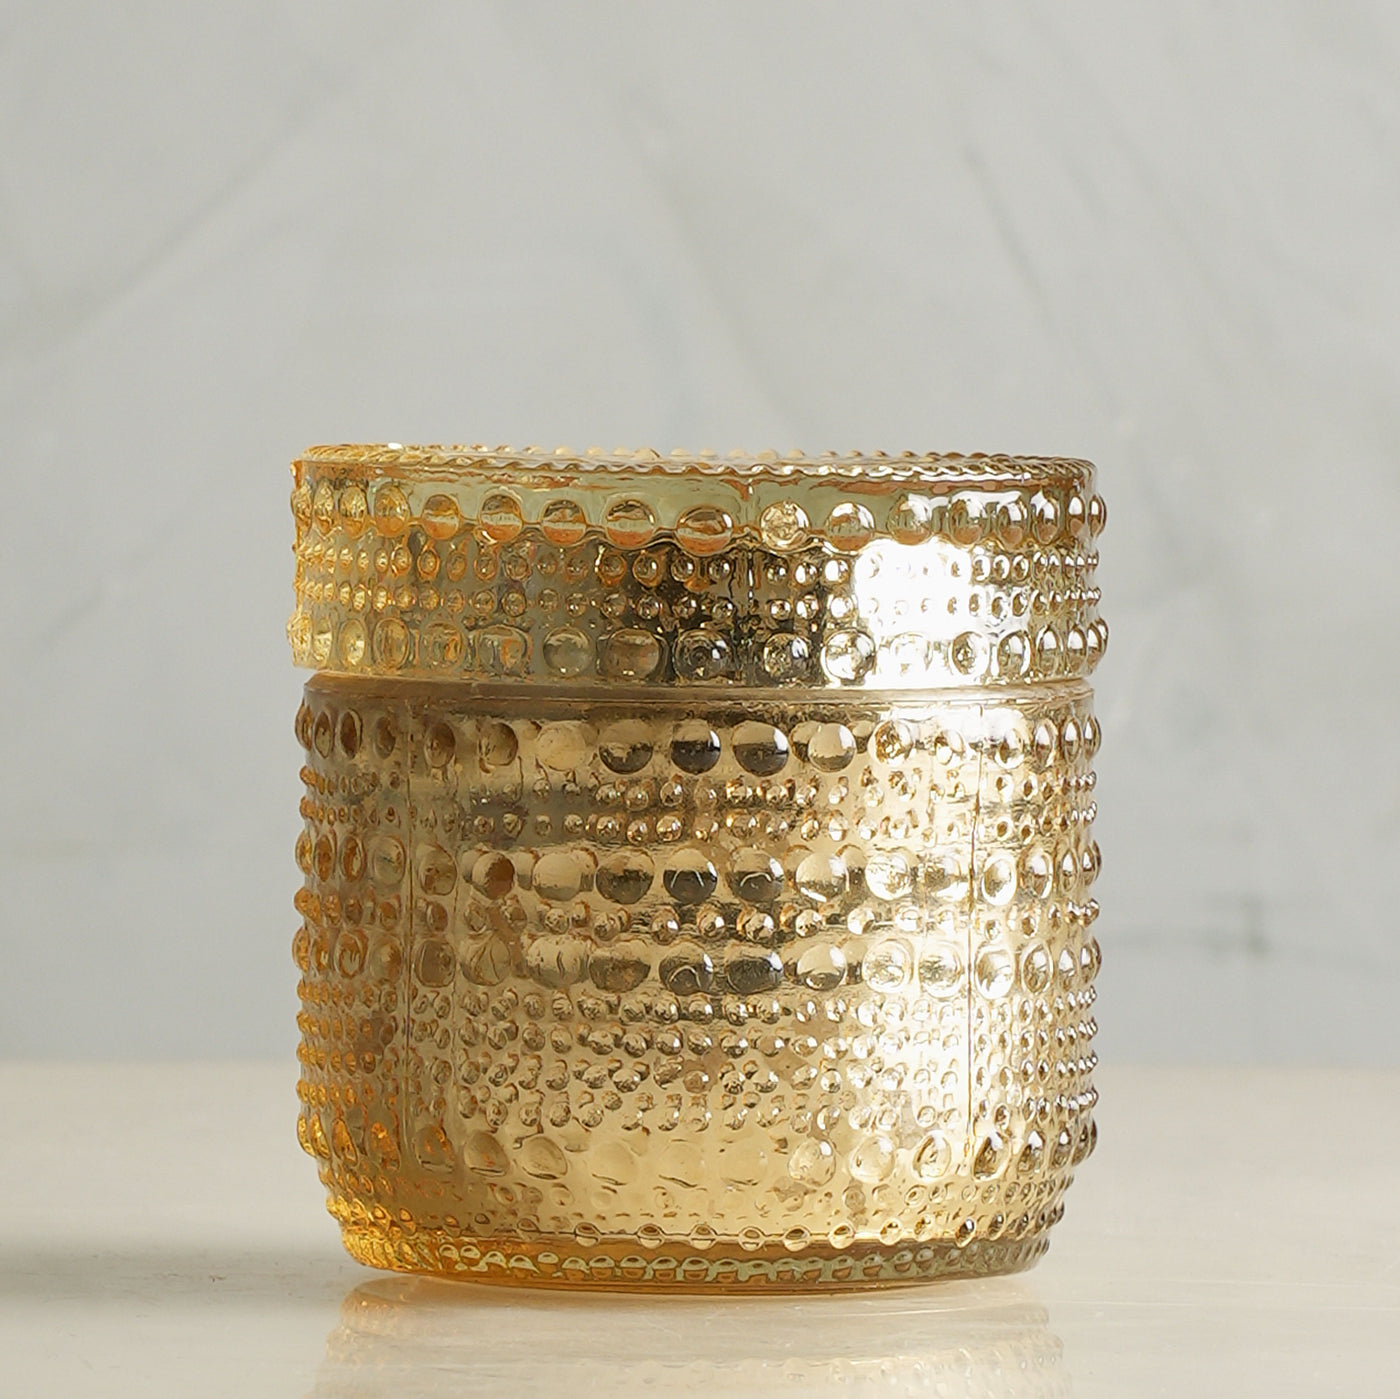 Doft Candles Diffuser & Trinket Jar Golden - Begramot